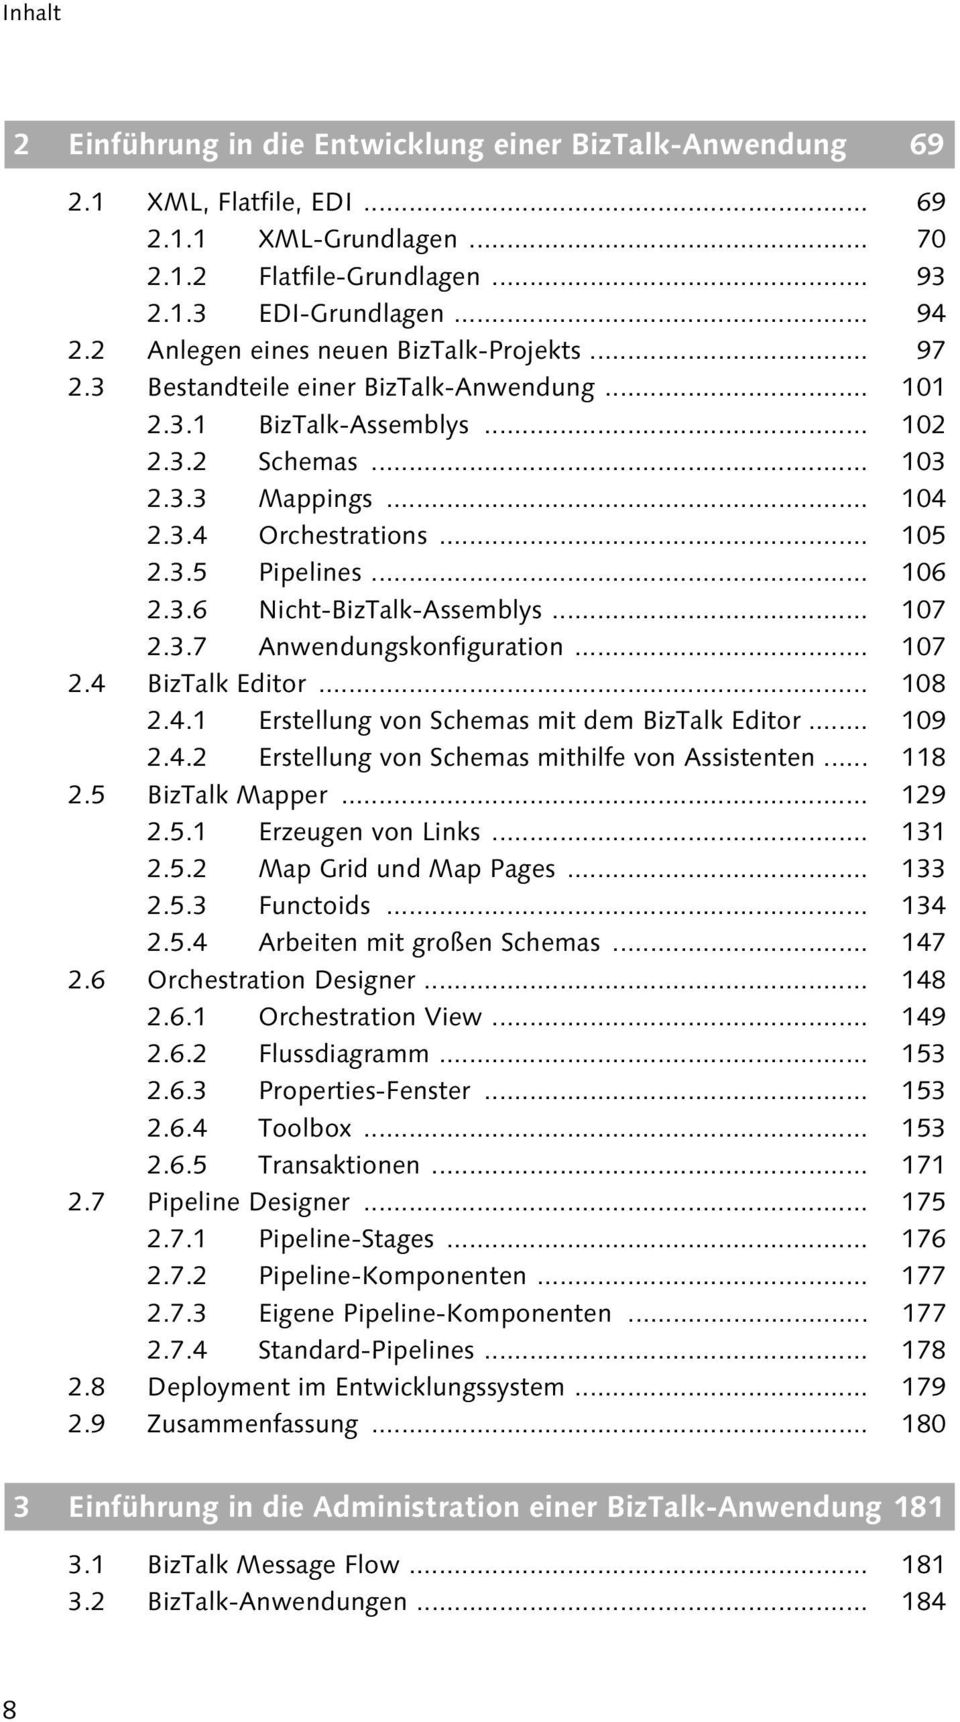 .. 106 2.3.6 Nicht-BizTalk-Assemblys... 107 2.3.7 Anwendungskonfiguration... 107 2.4 BizTalk Editor... 108 2.4.1 Erstellung von Schemas mit dem BizTalk Editor... 109 2.4.2 Erstellung von Schemas mithilfe von Assistenten.